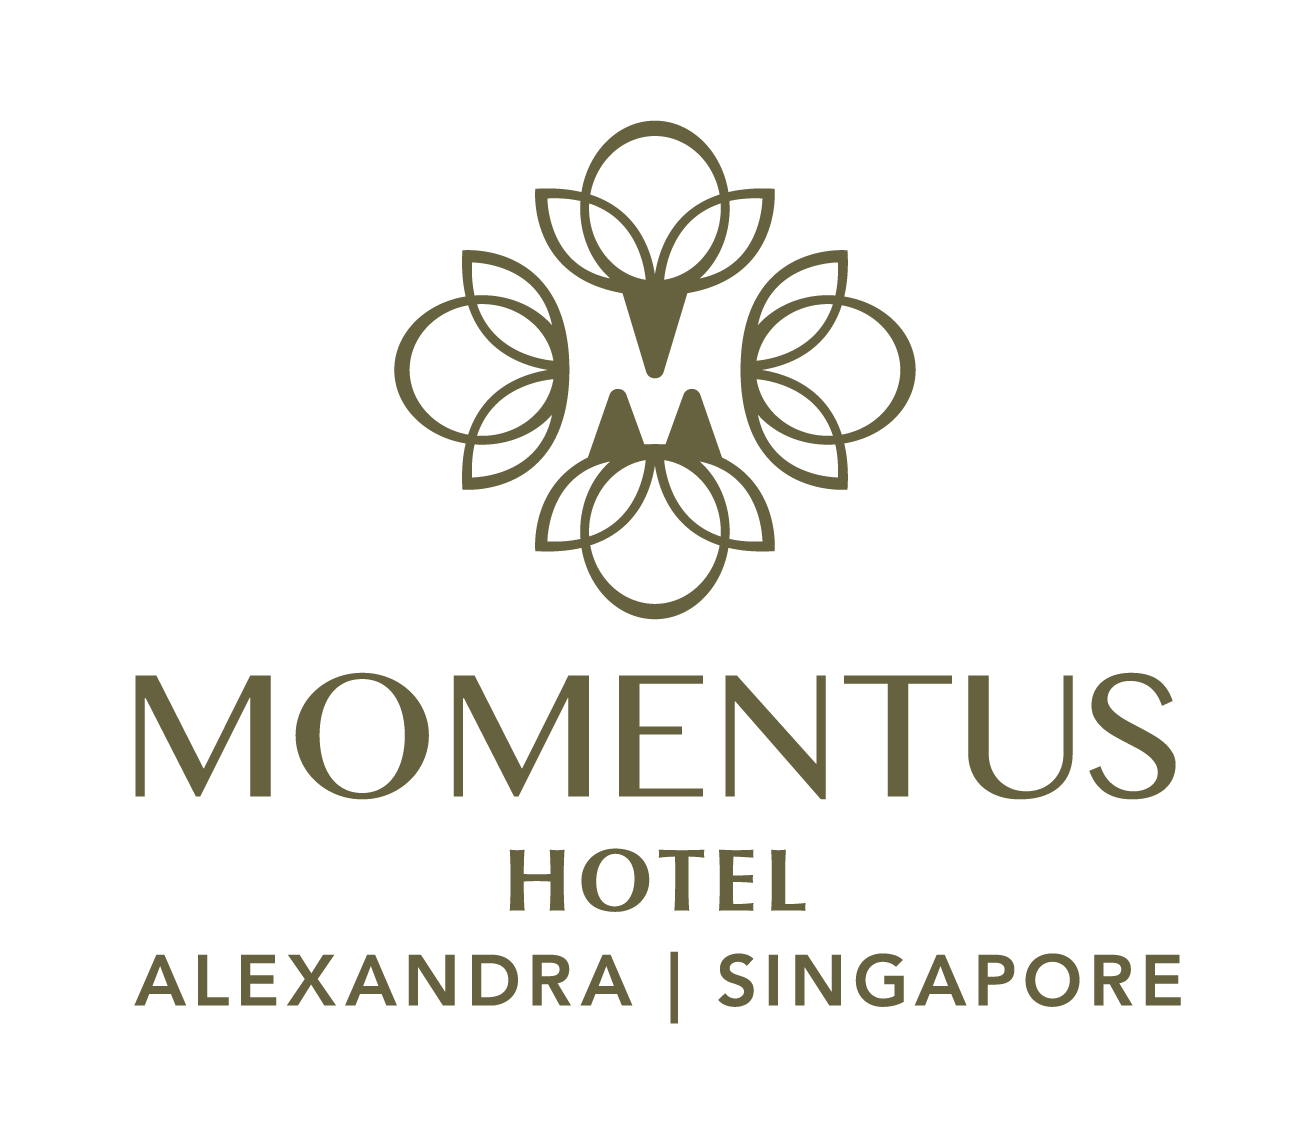 Momentus Hotel Alexandra company logo